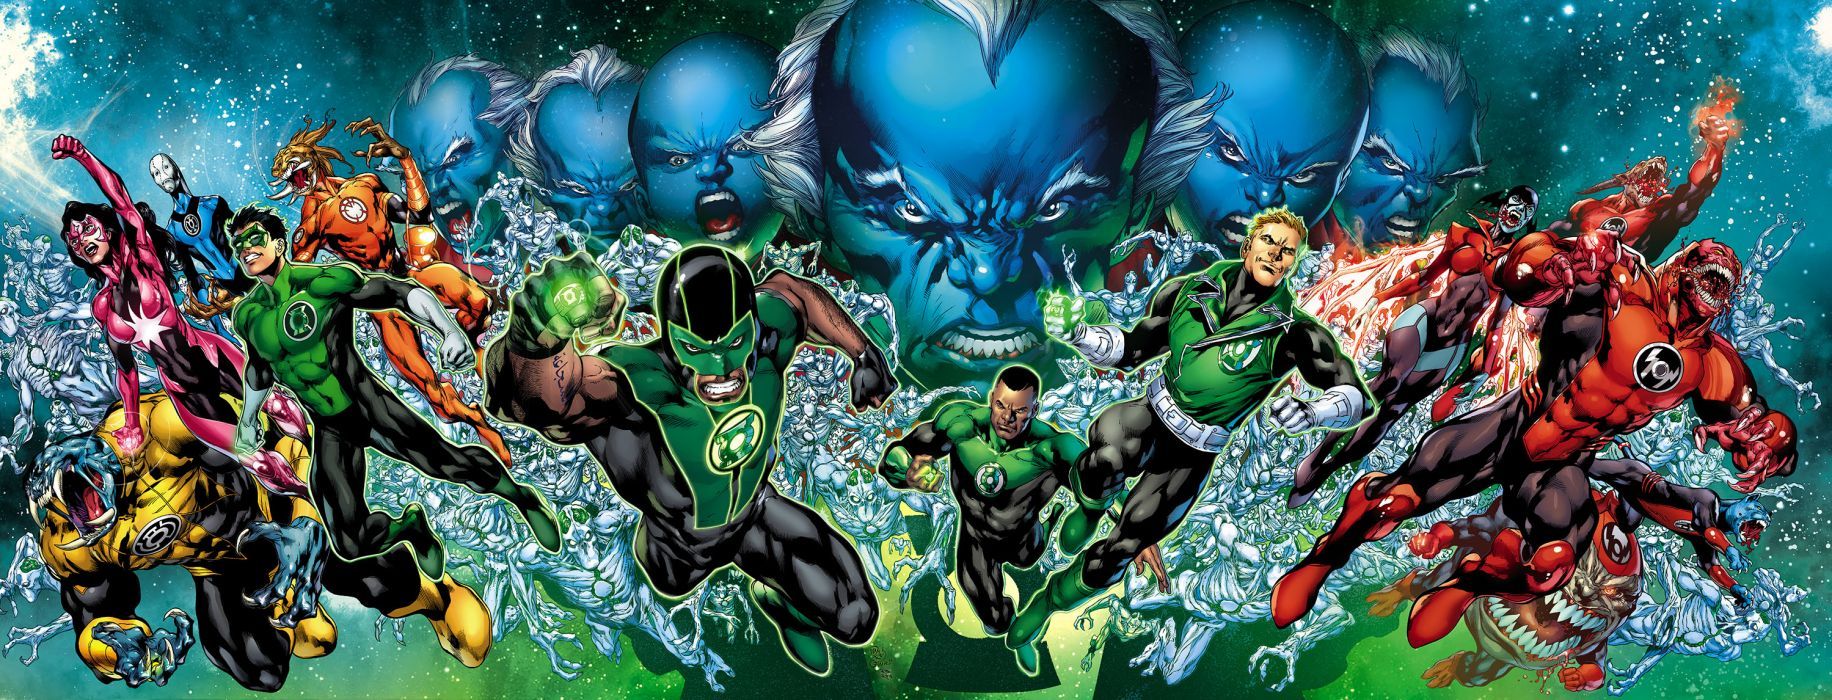 Green Lantern Dc Comics Superhero E Wallpaperx1146